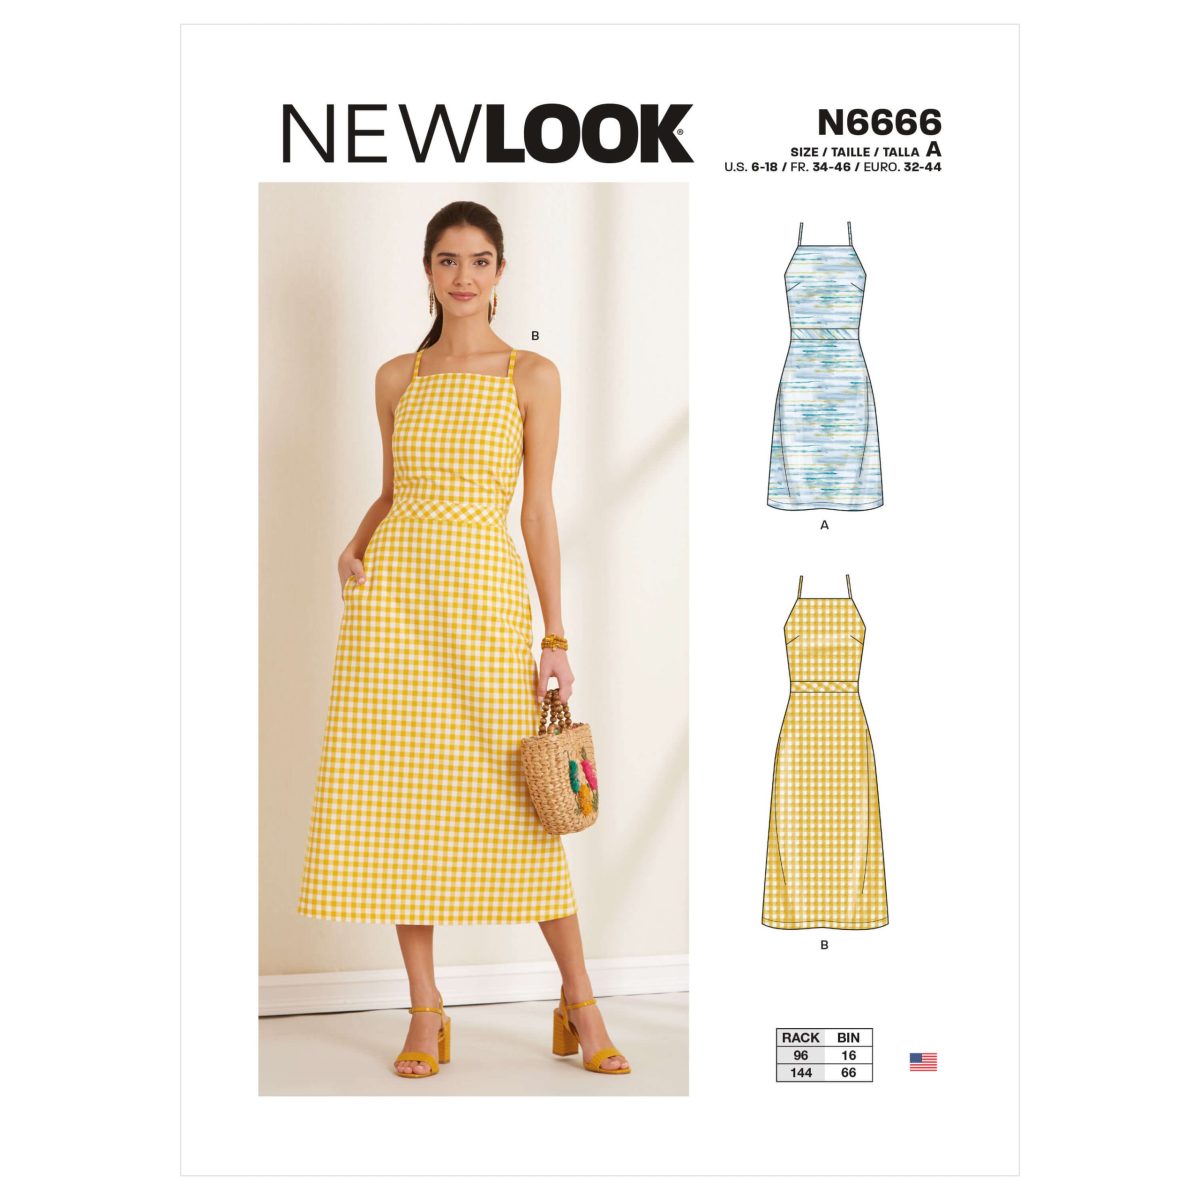 New Look Sewing Pattern N6666 Misses' Dress